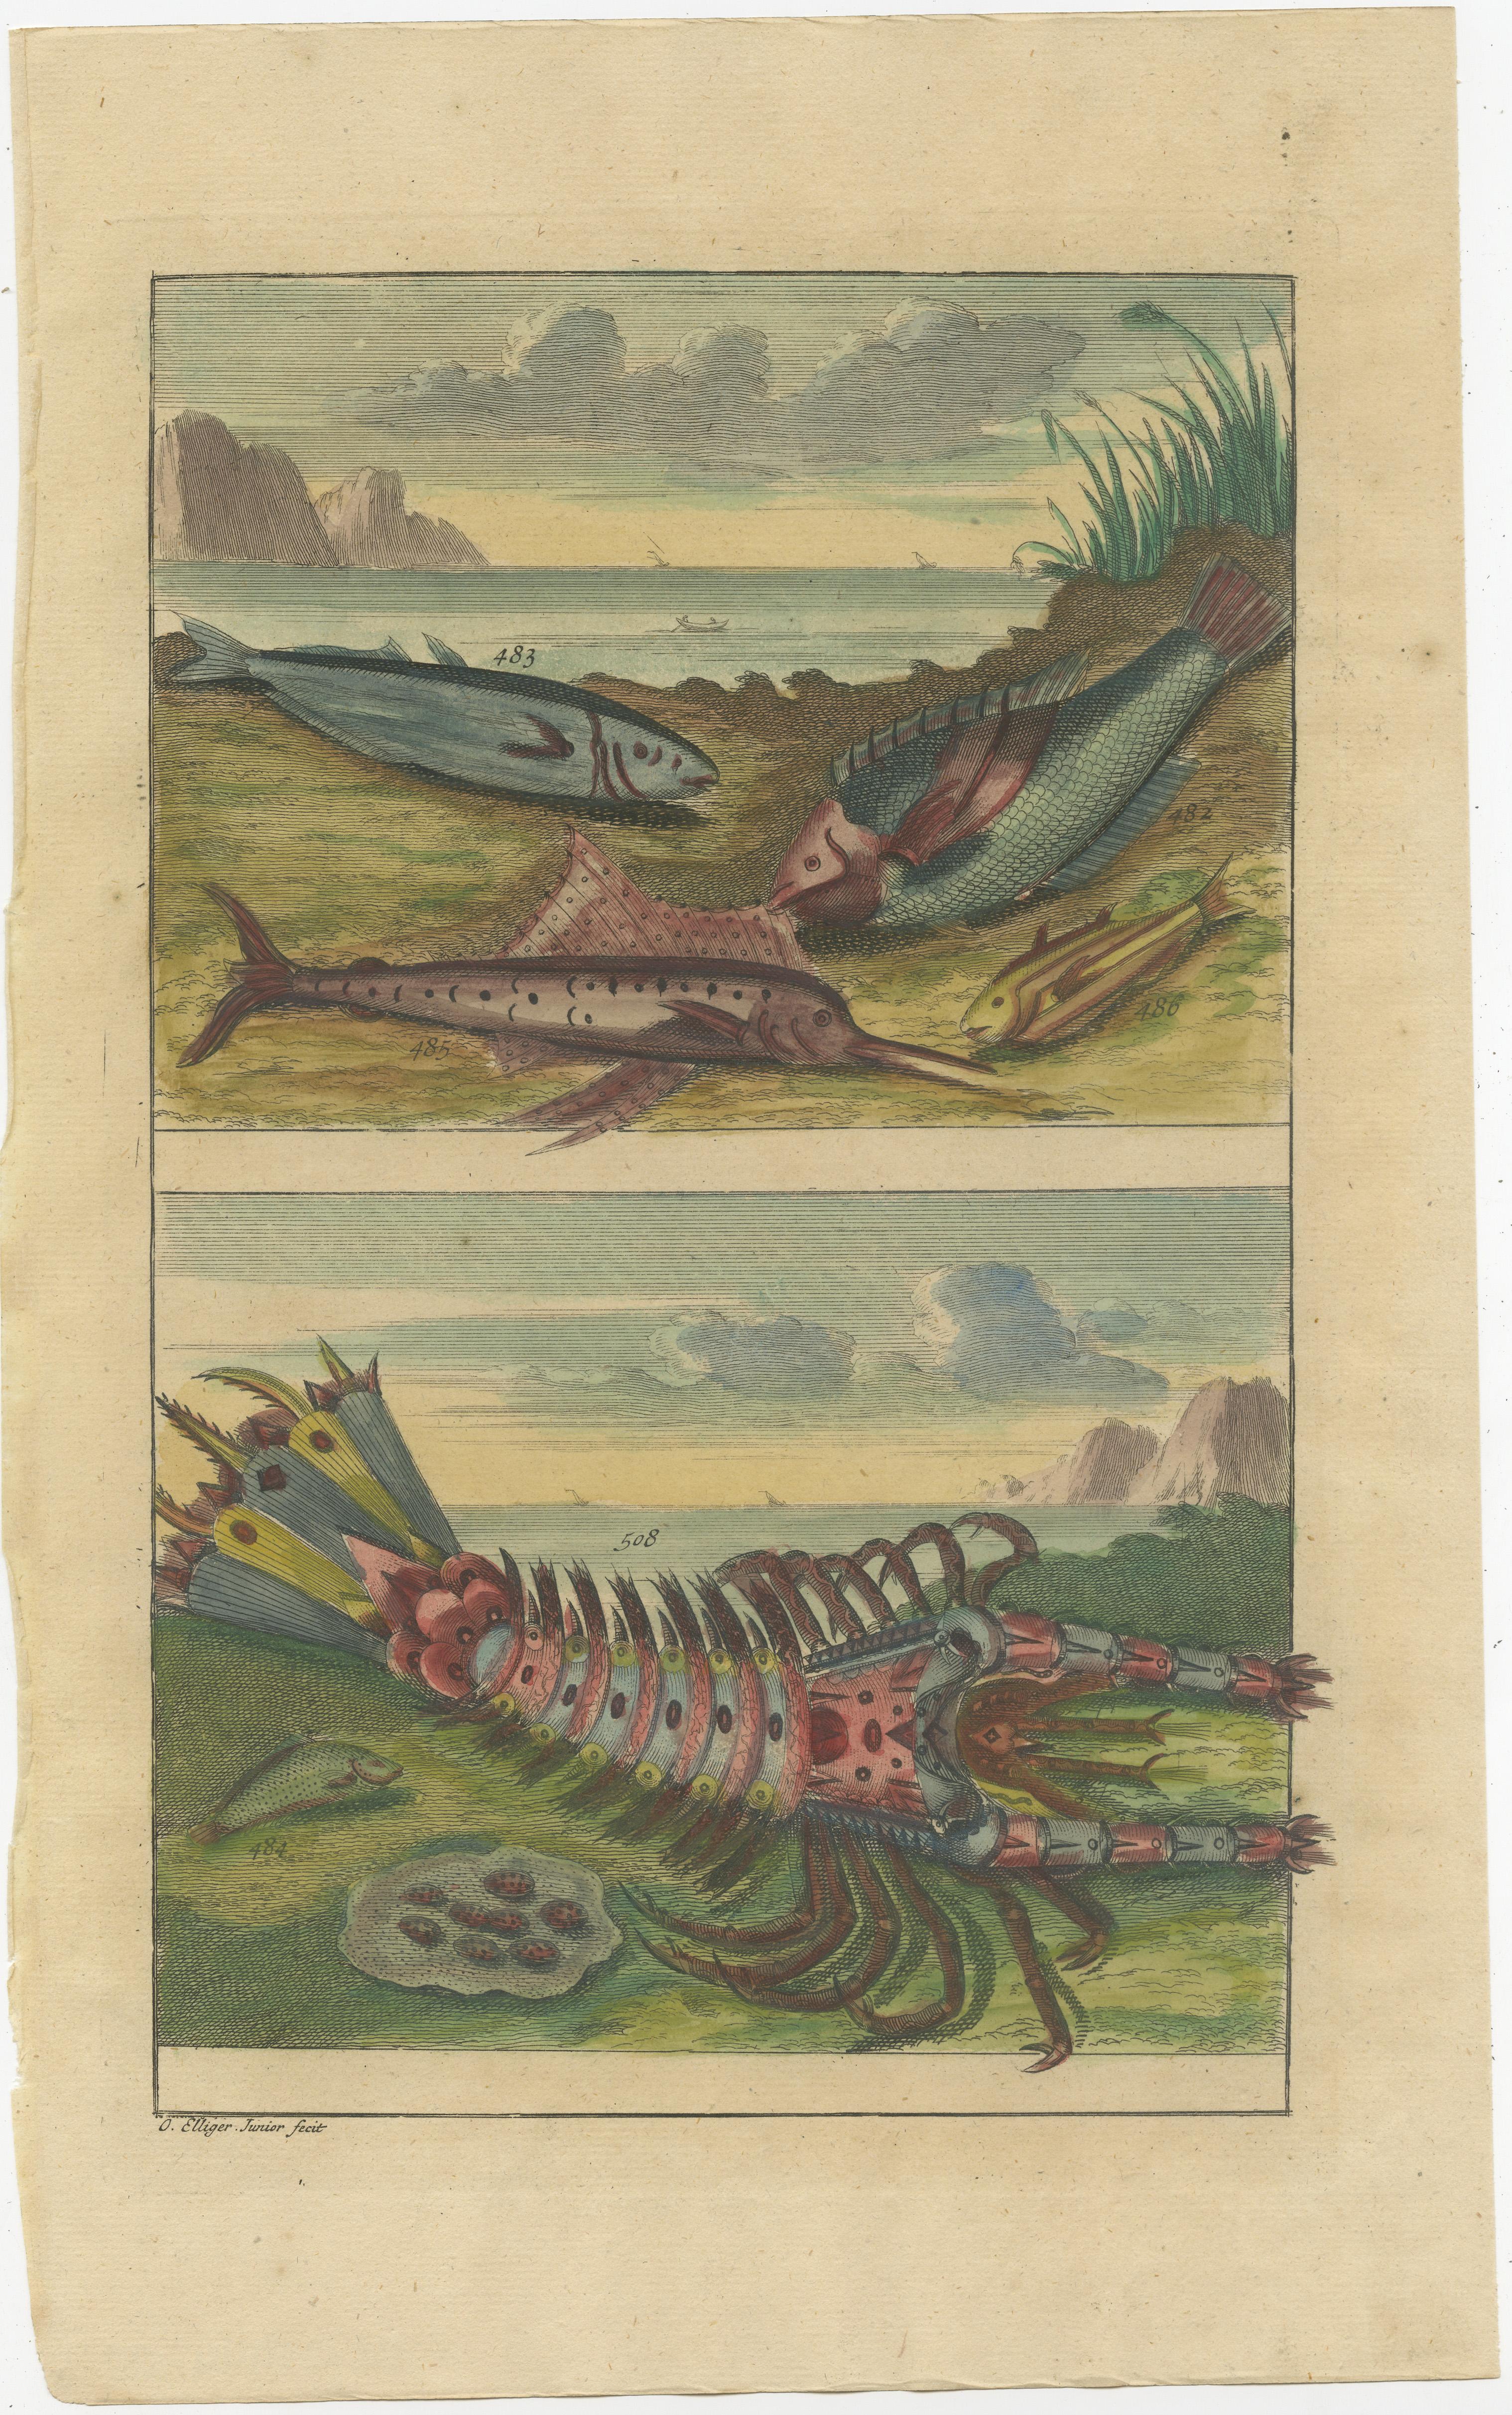 Ensemble de trois gravures anciennes représentant divers poissons et crustacés. Ces impressions proviennent de 'Oud en Nieuw Oost-Indiën' de F. Valentijn.

François Valentyn ou Valentijn (17 avril 1666 - 6 août 1727) était un pasteur calviniste